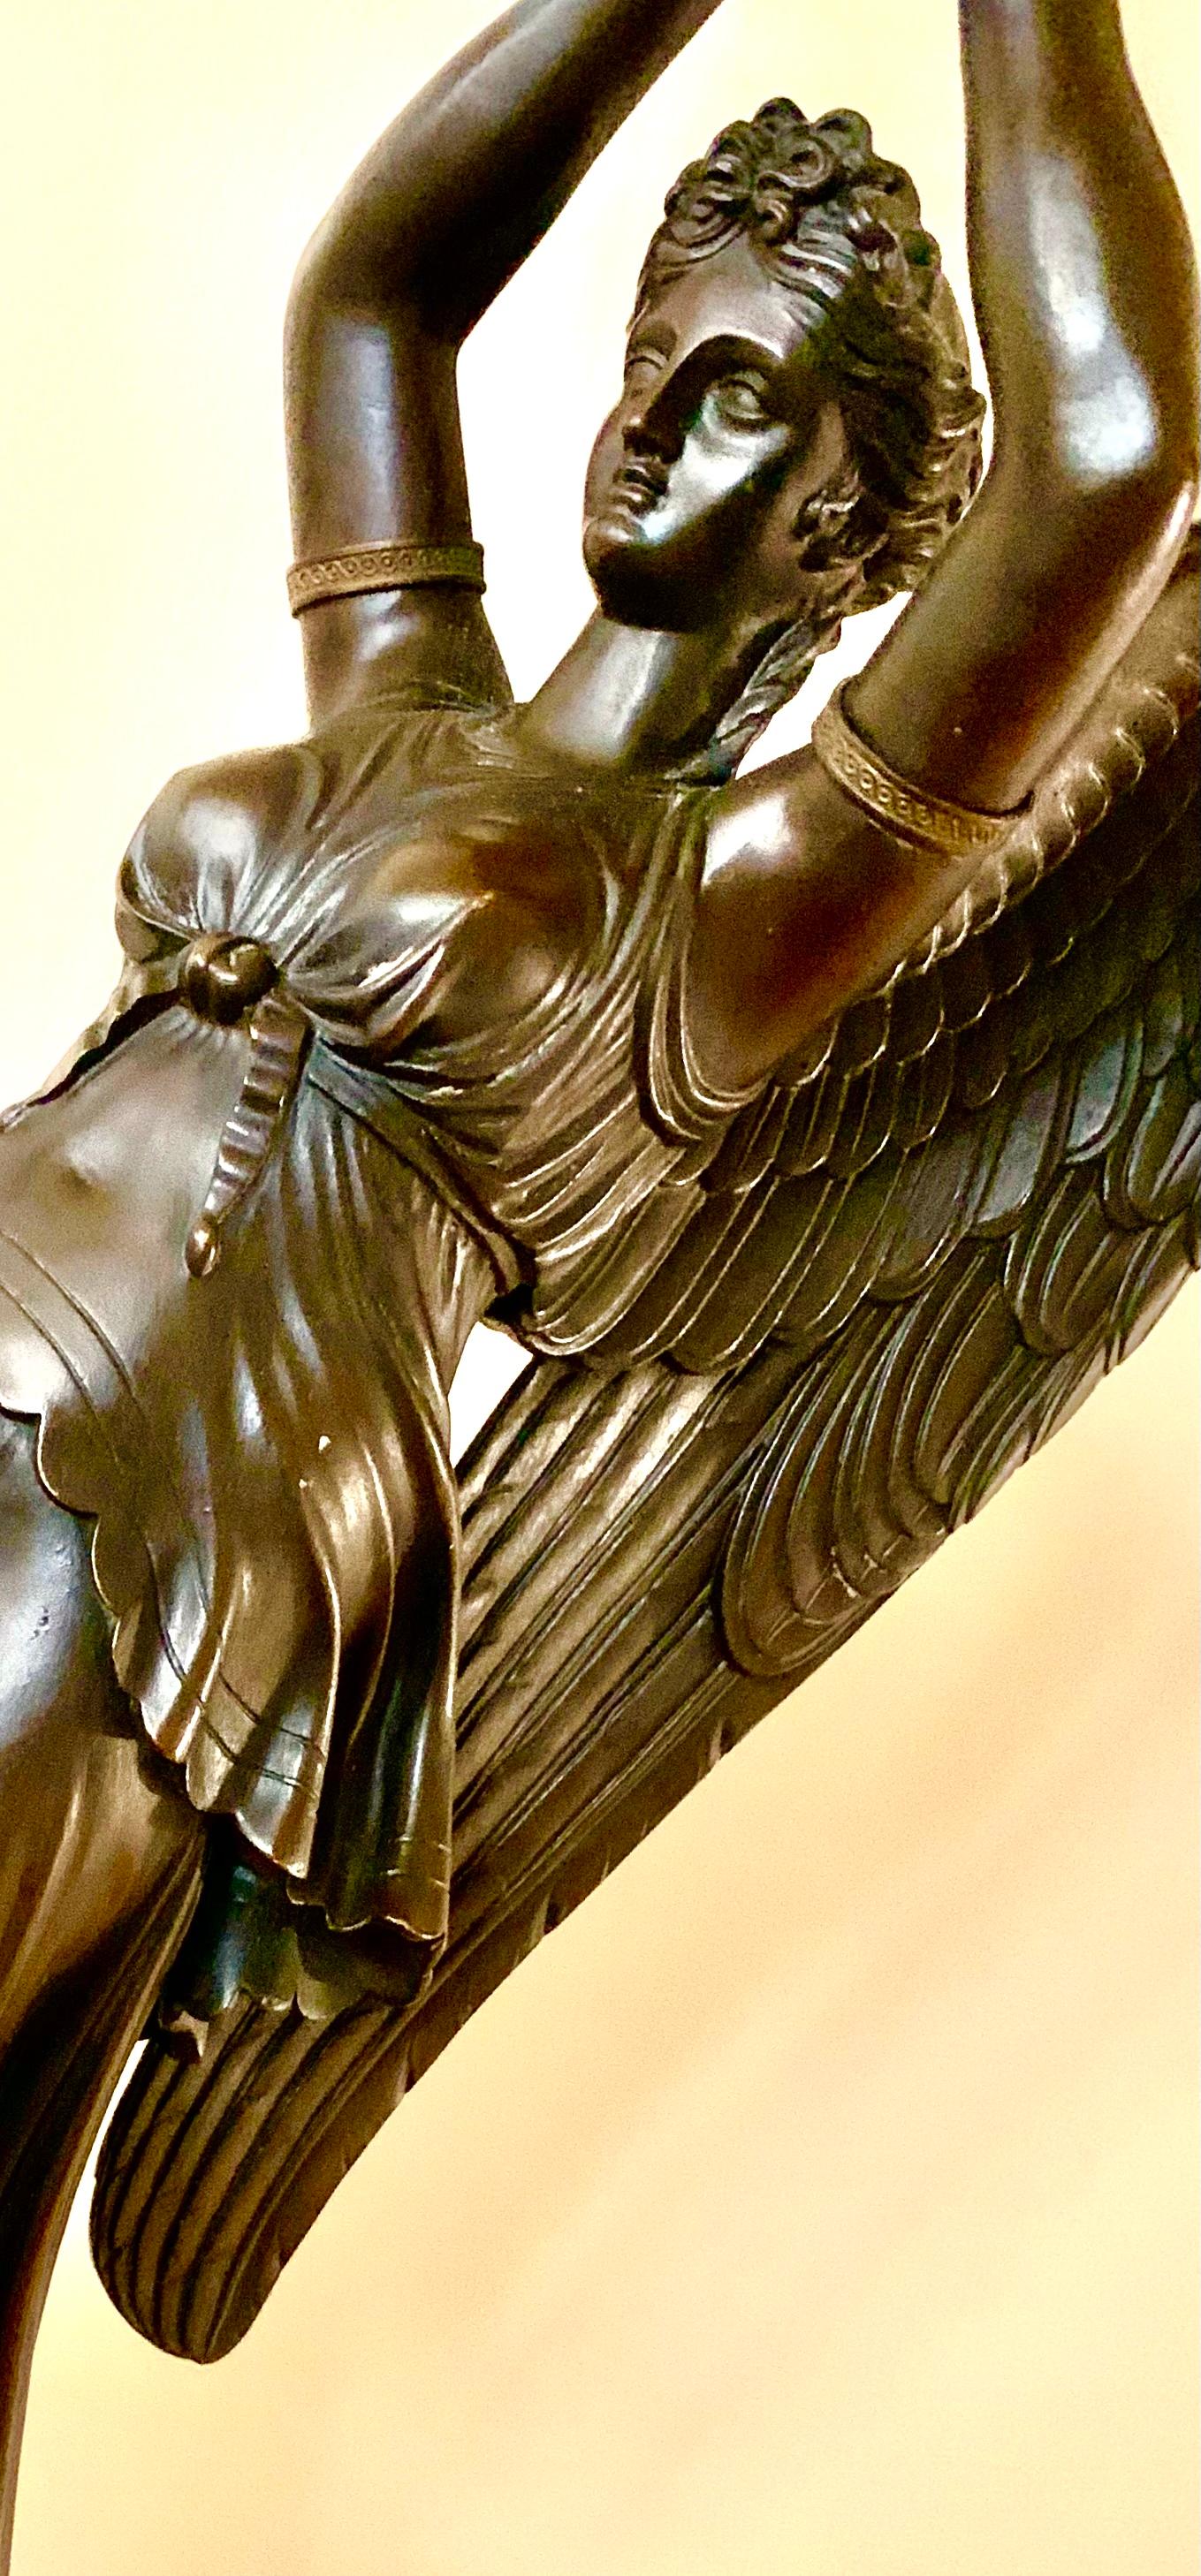 Exceptionnelle paire de candélabres de palais en bronze doré et patiné Rouge Griotte de Claude-François Rabiat, vers 1805. Chacune présente une figure classique de Victoire ailée, la déesse Nike, tenant un candélabre de forme feuillue avec un motif